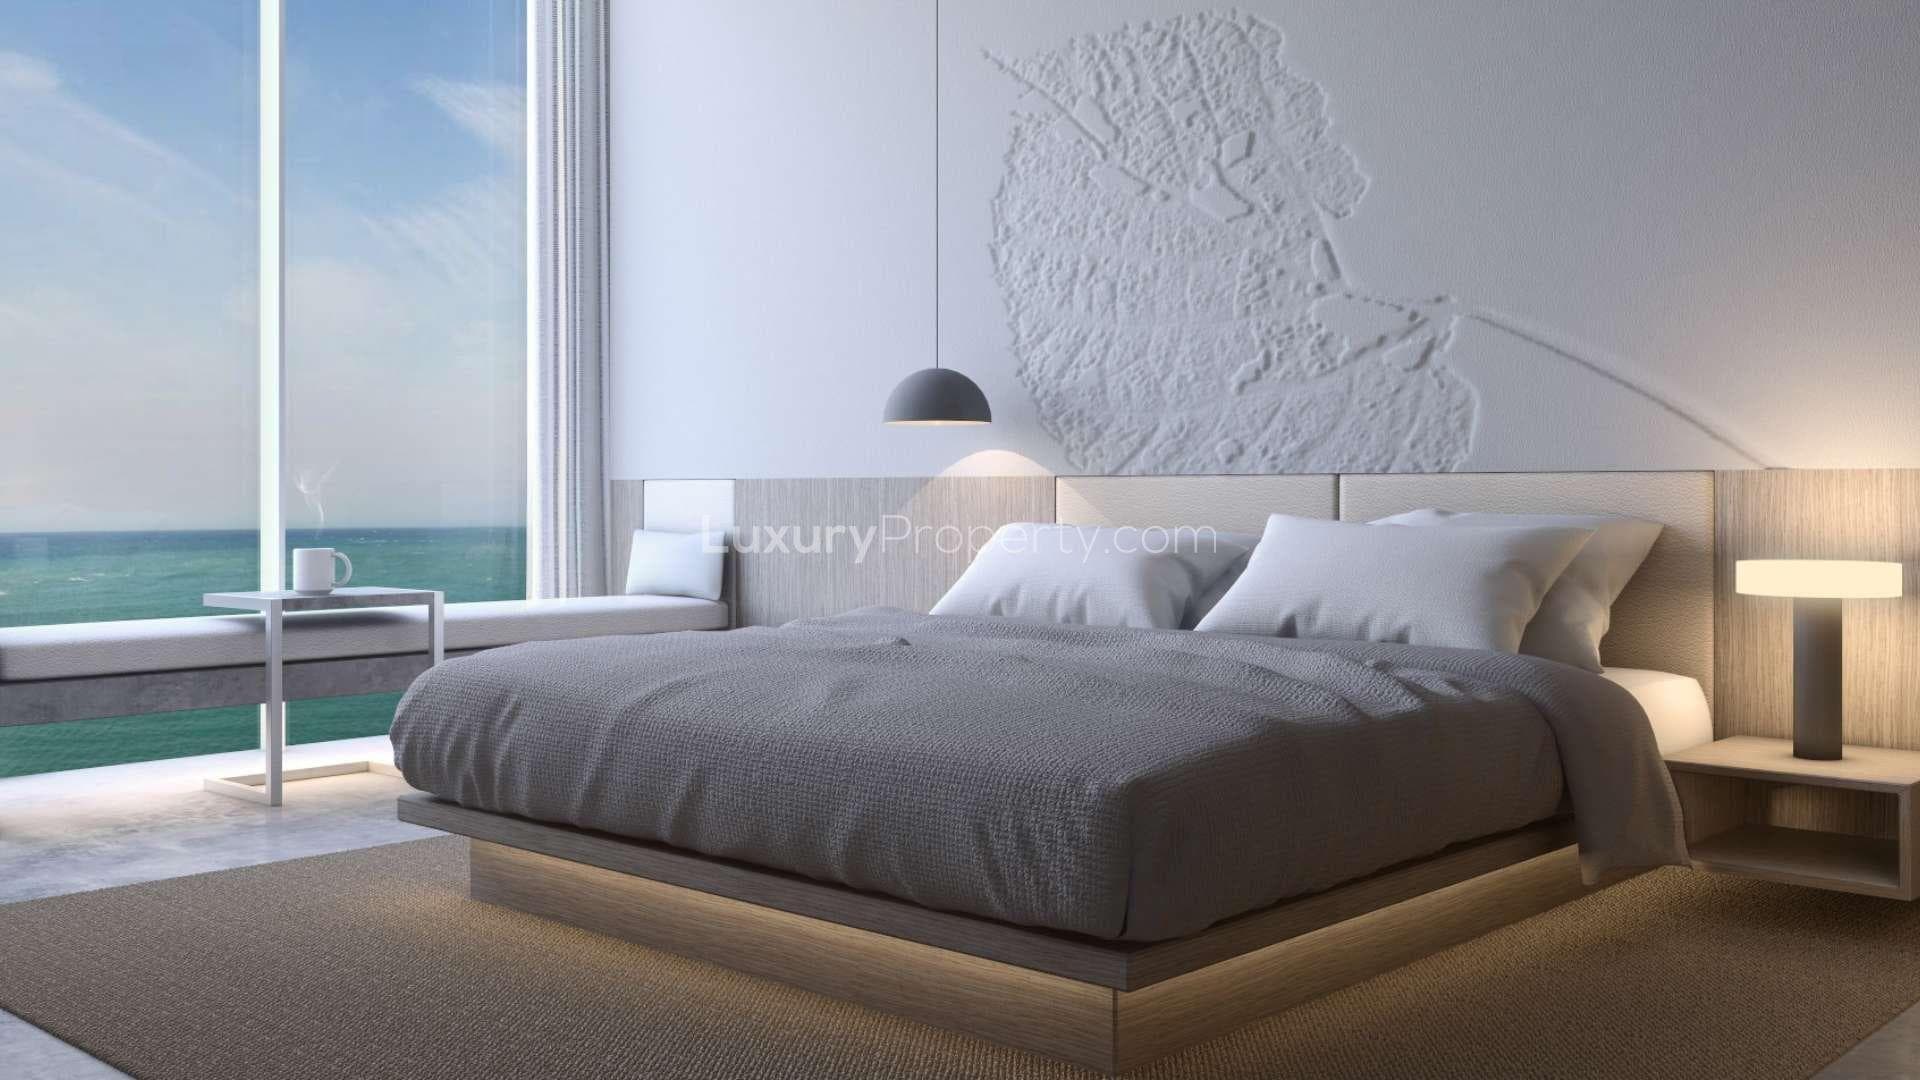 0 Bedroom Apartment For Sale Desert Palm Lp37960 1a5909c06ce4dc00.jpg